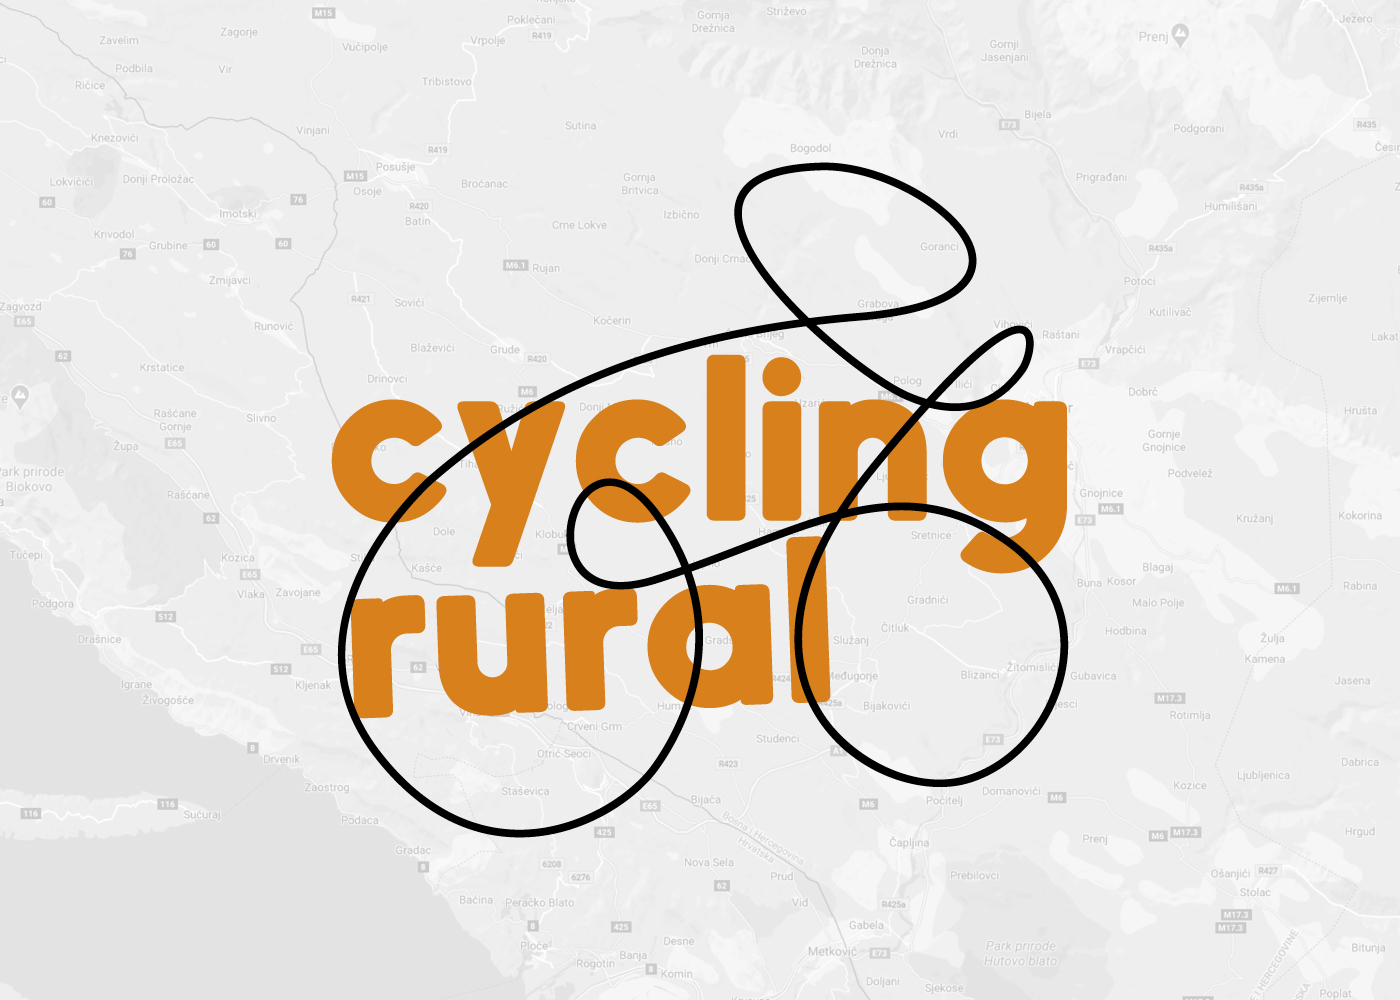 Vizualni identitet "Cycling rural" projekta